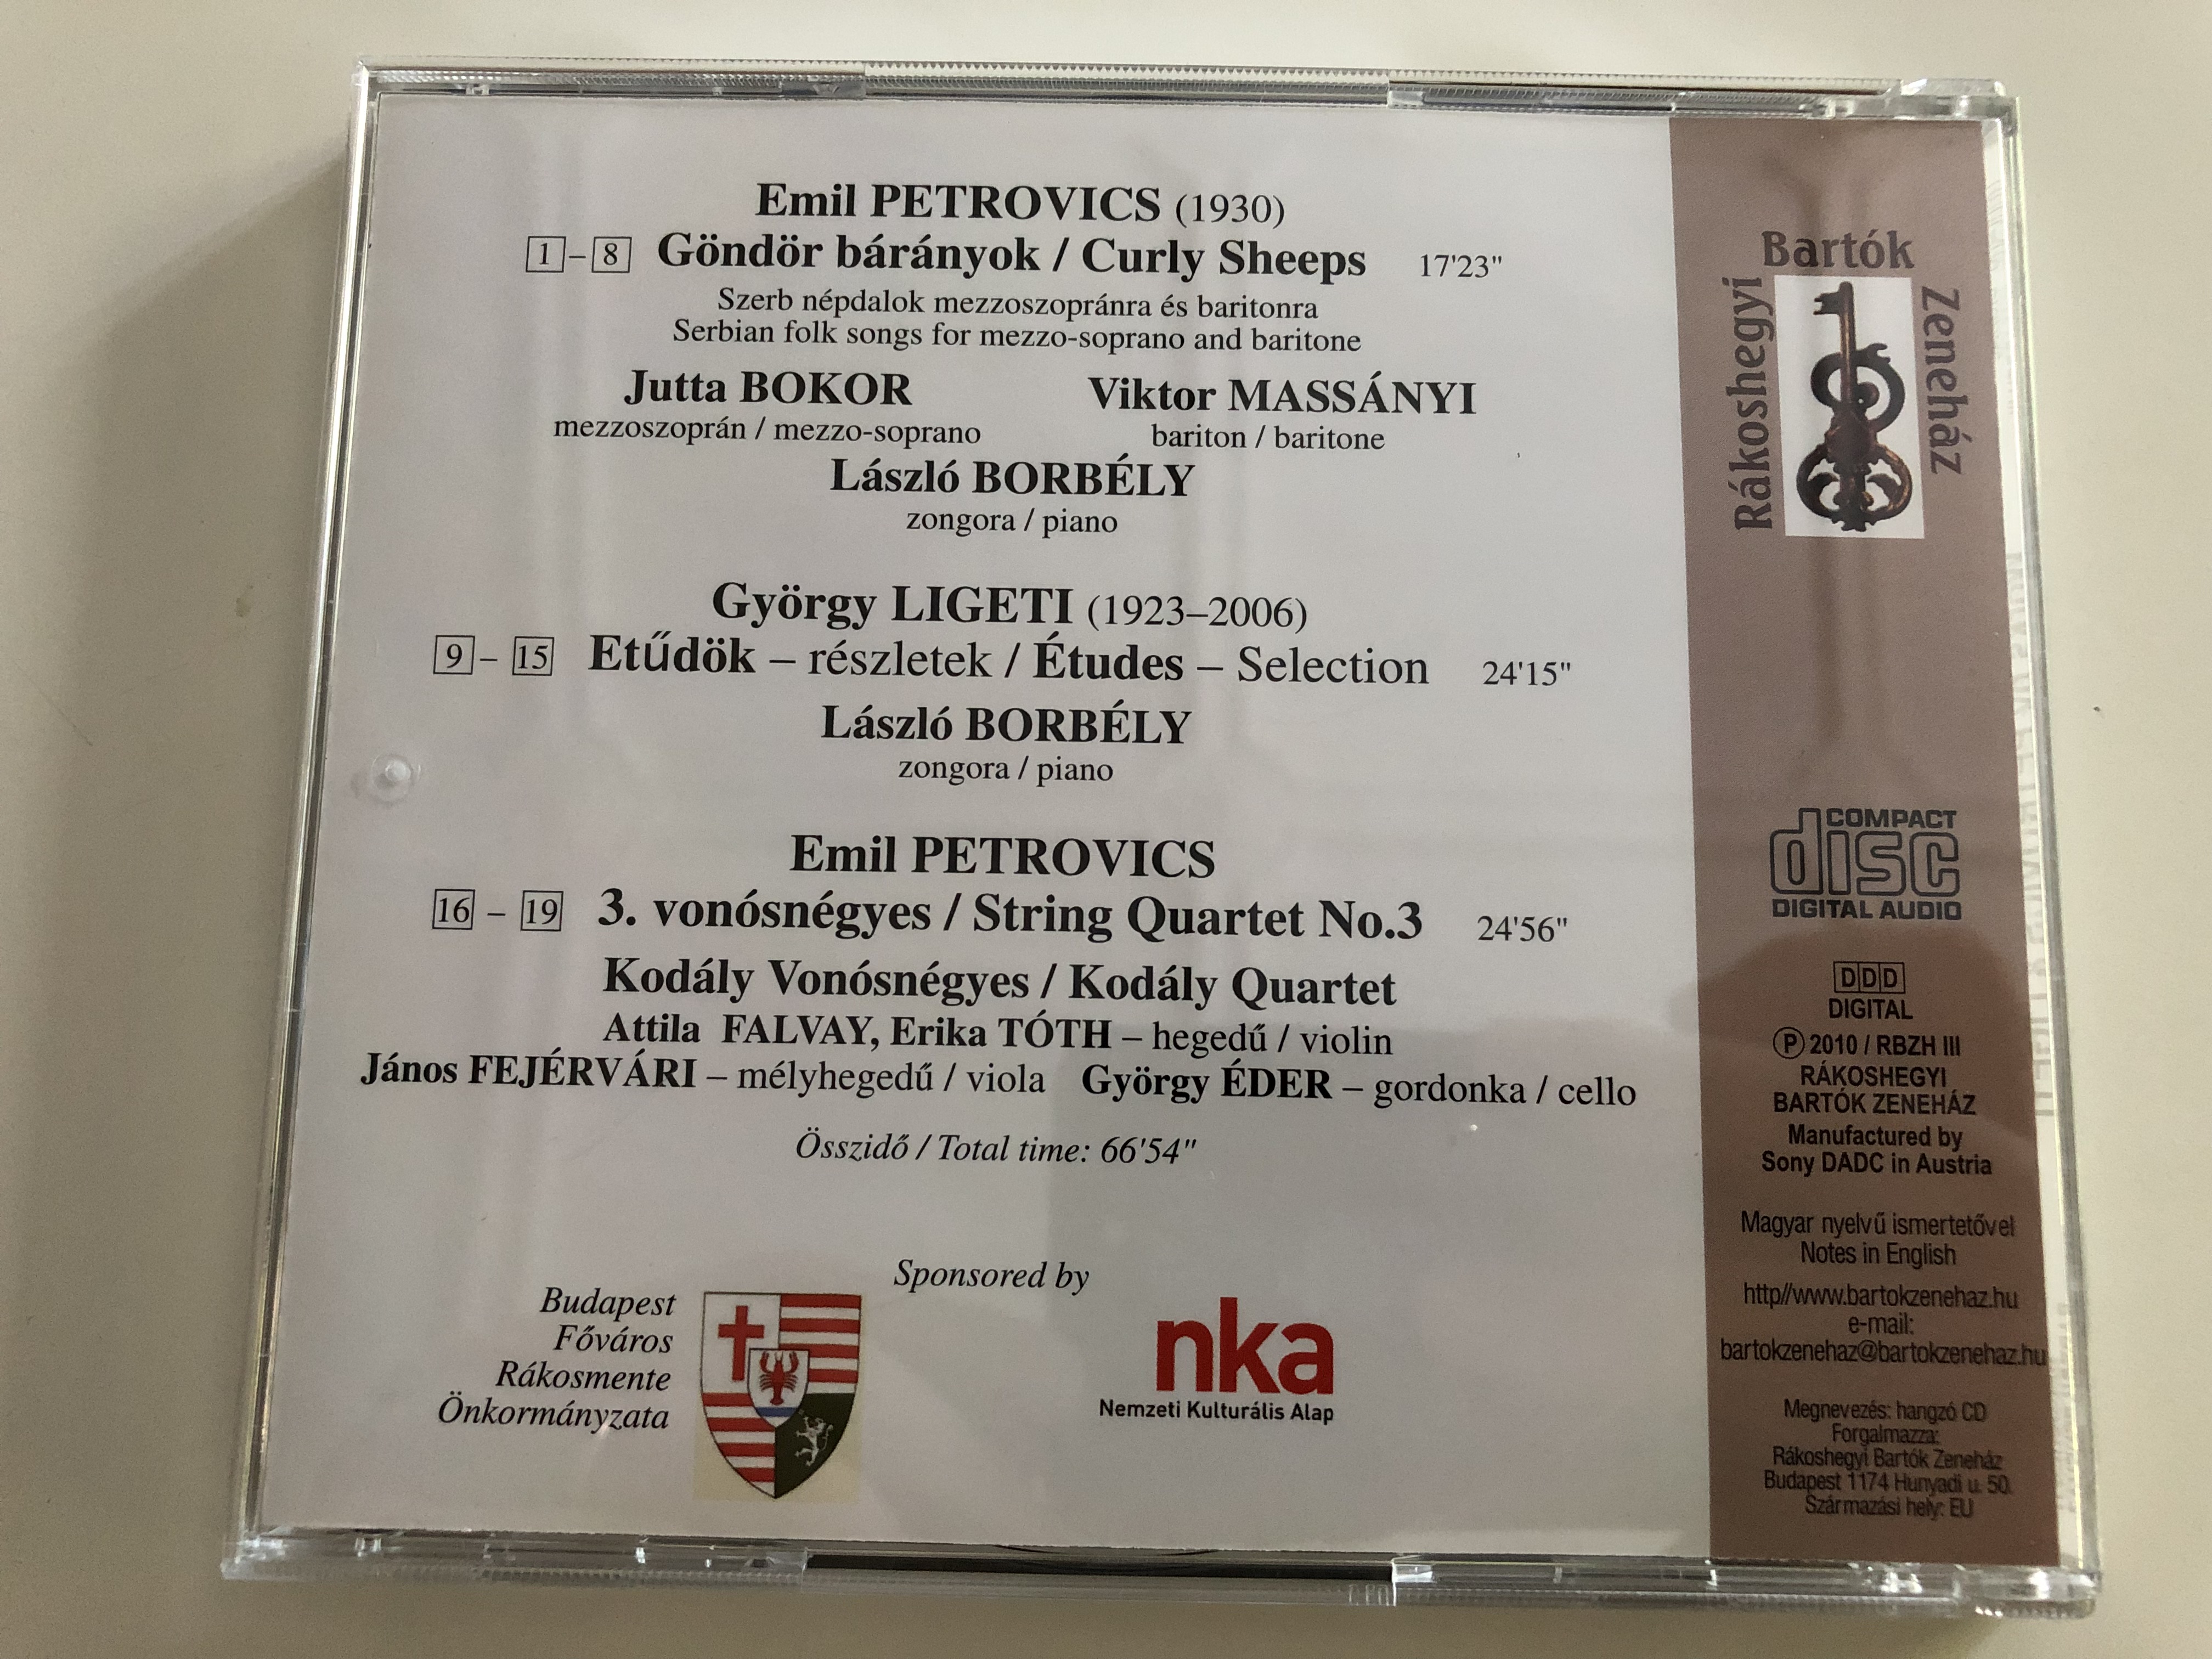 petrovics-g-nd-r-b-r-nyok-3.-von-sn-gyes-ligeti-et-d-k-r-szletek-bokor-jutta-mezzo-soprano-mass-nyi-viktor-baritone-borb-ly-l-szl-piano-kod-ly-von-sn-gyes-audio-cd-2010-7-.jpg